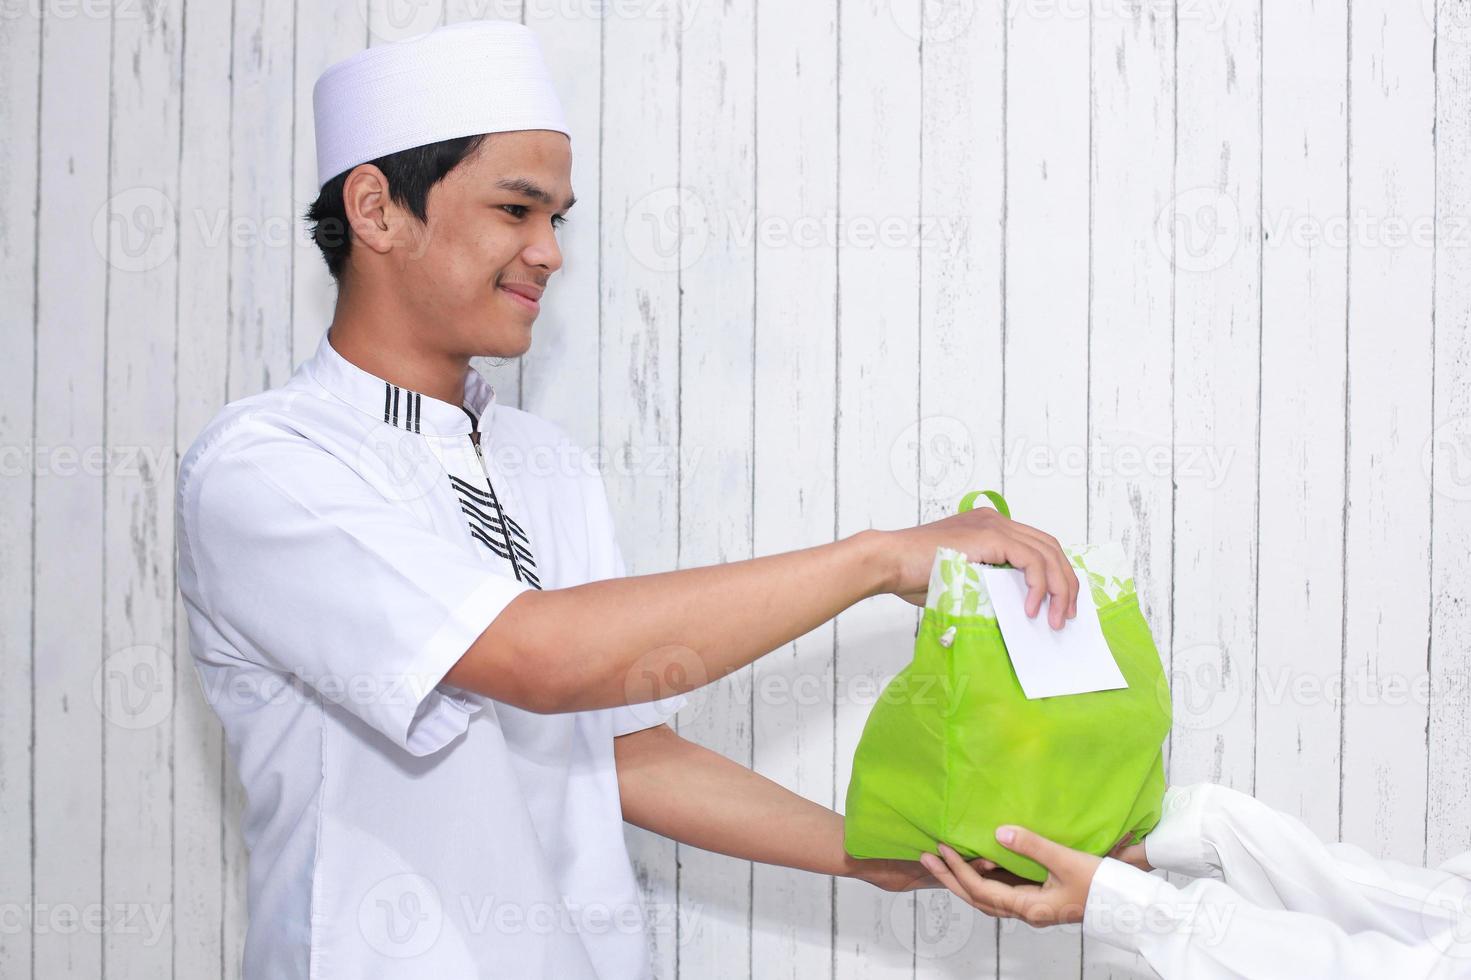 religieuze moslimman die aalmoezen geeft in de vorm van voedsel in een groene zak en een witte envelop gevuld met geld foto